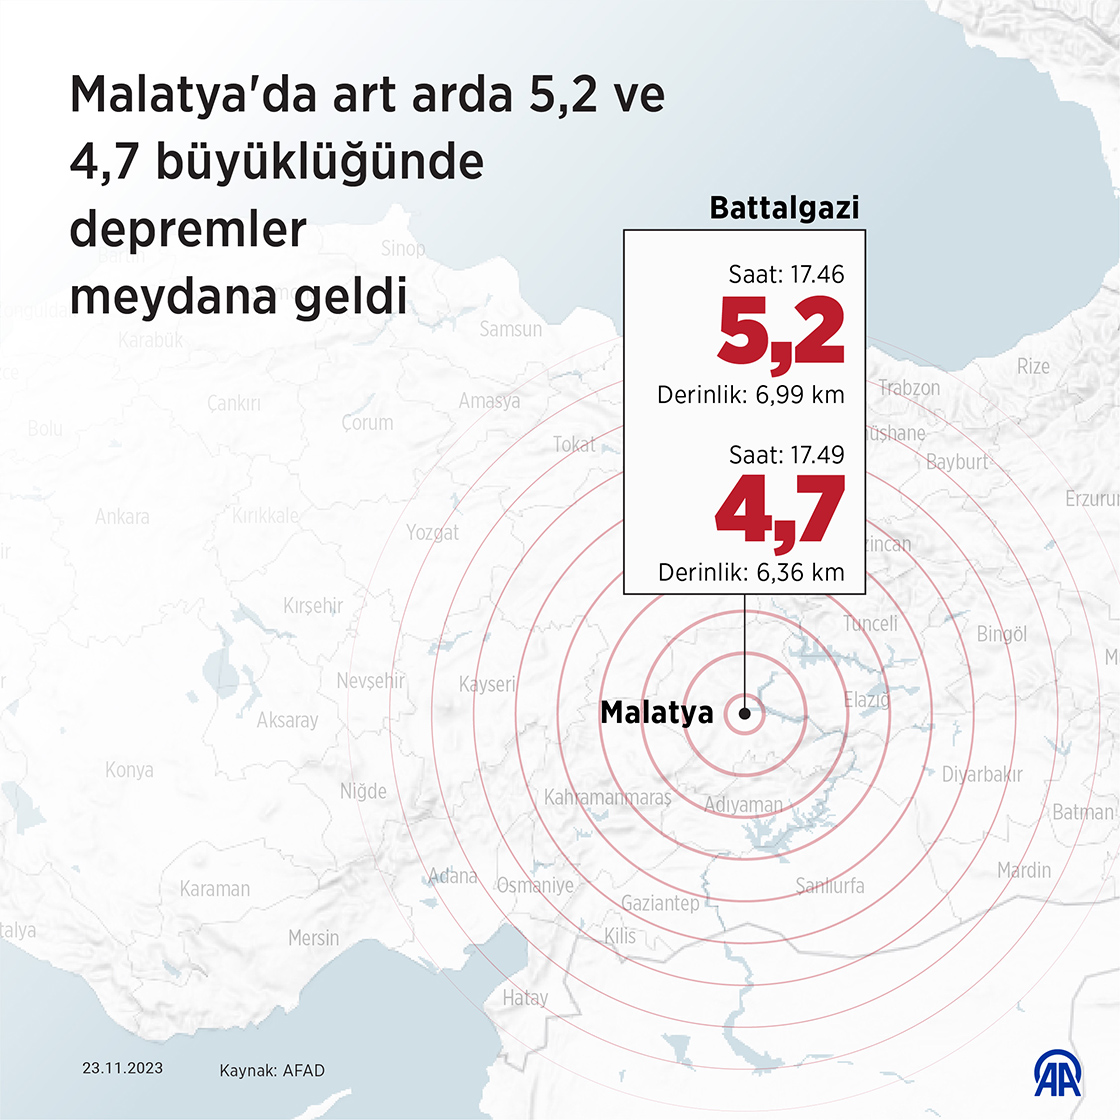 Malatya'da art arda 5,2 ve 4,7 büyüklüğünde depremler meydana geldi